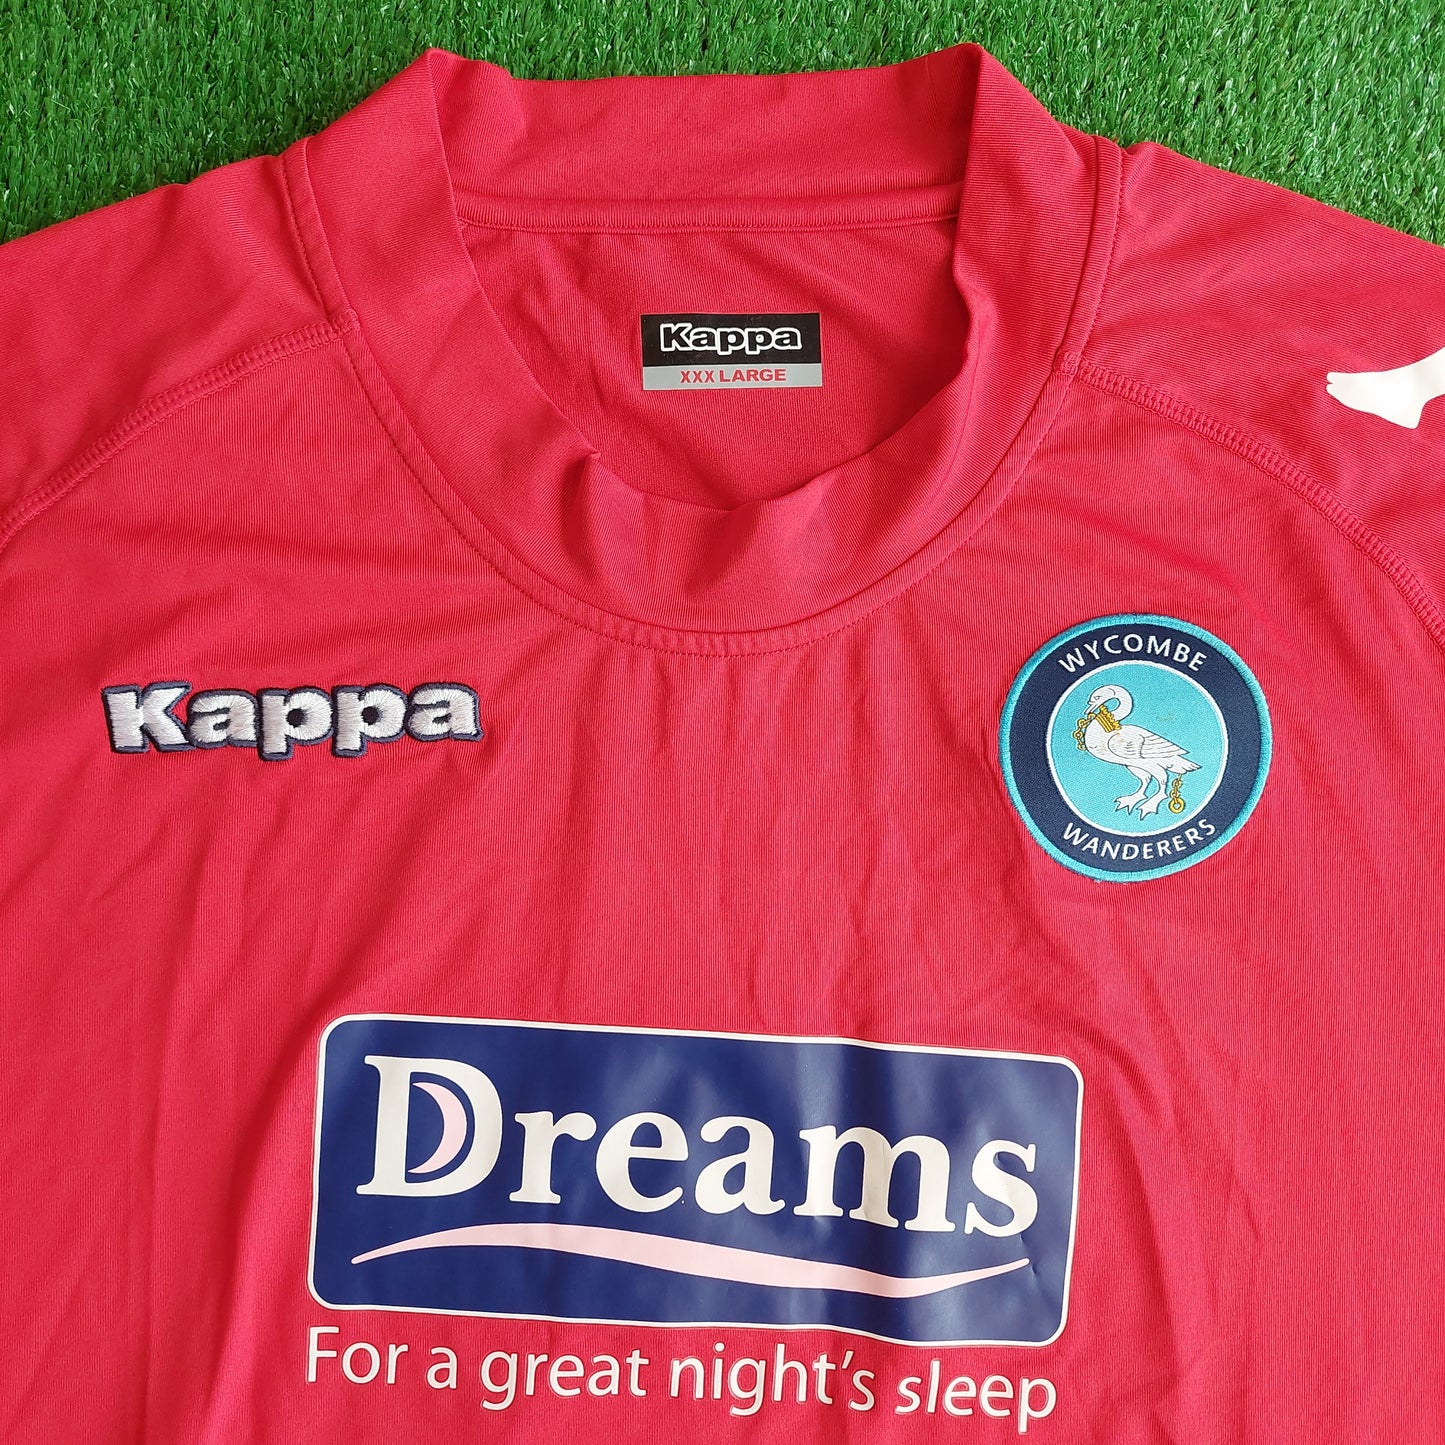 Wycombe Wanderers 2011/12 Away Shirt (BNWT) - Size 3XL